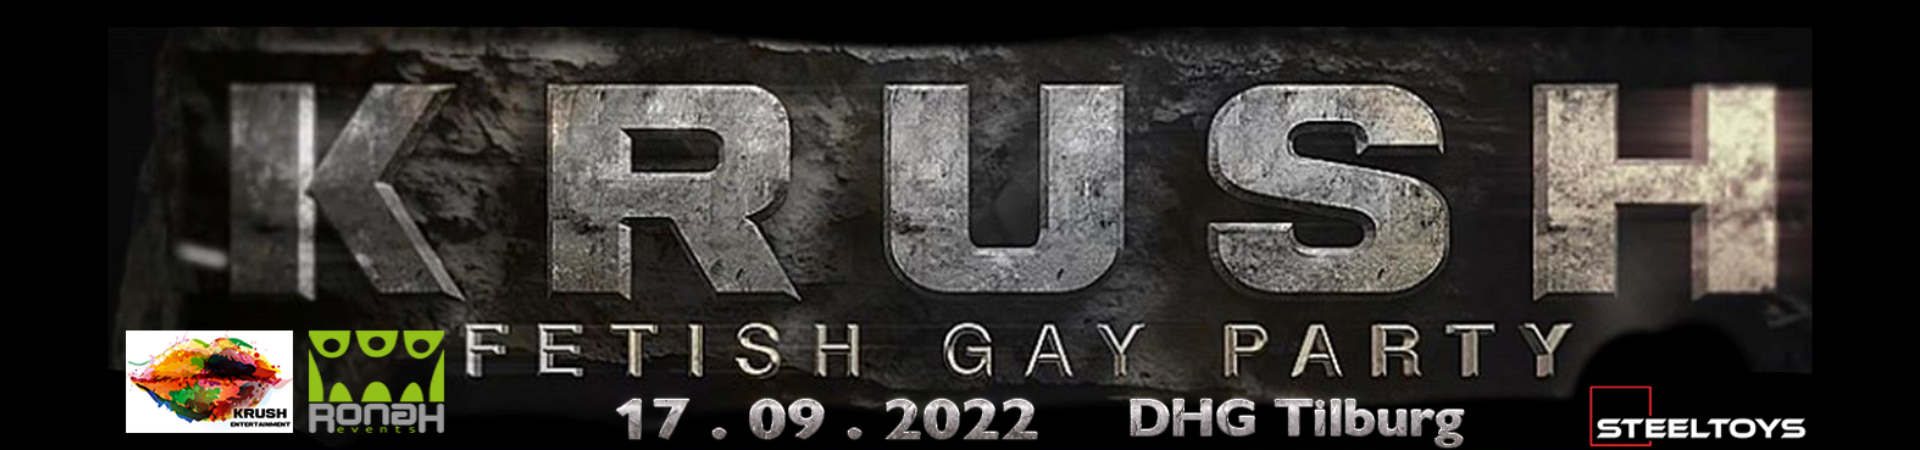 Krush Fetish Gay Party 2022